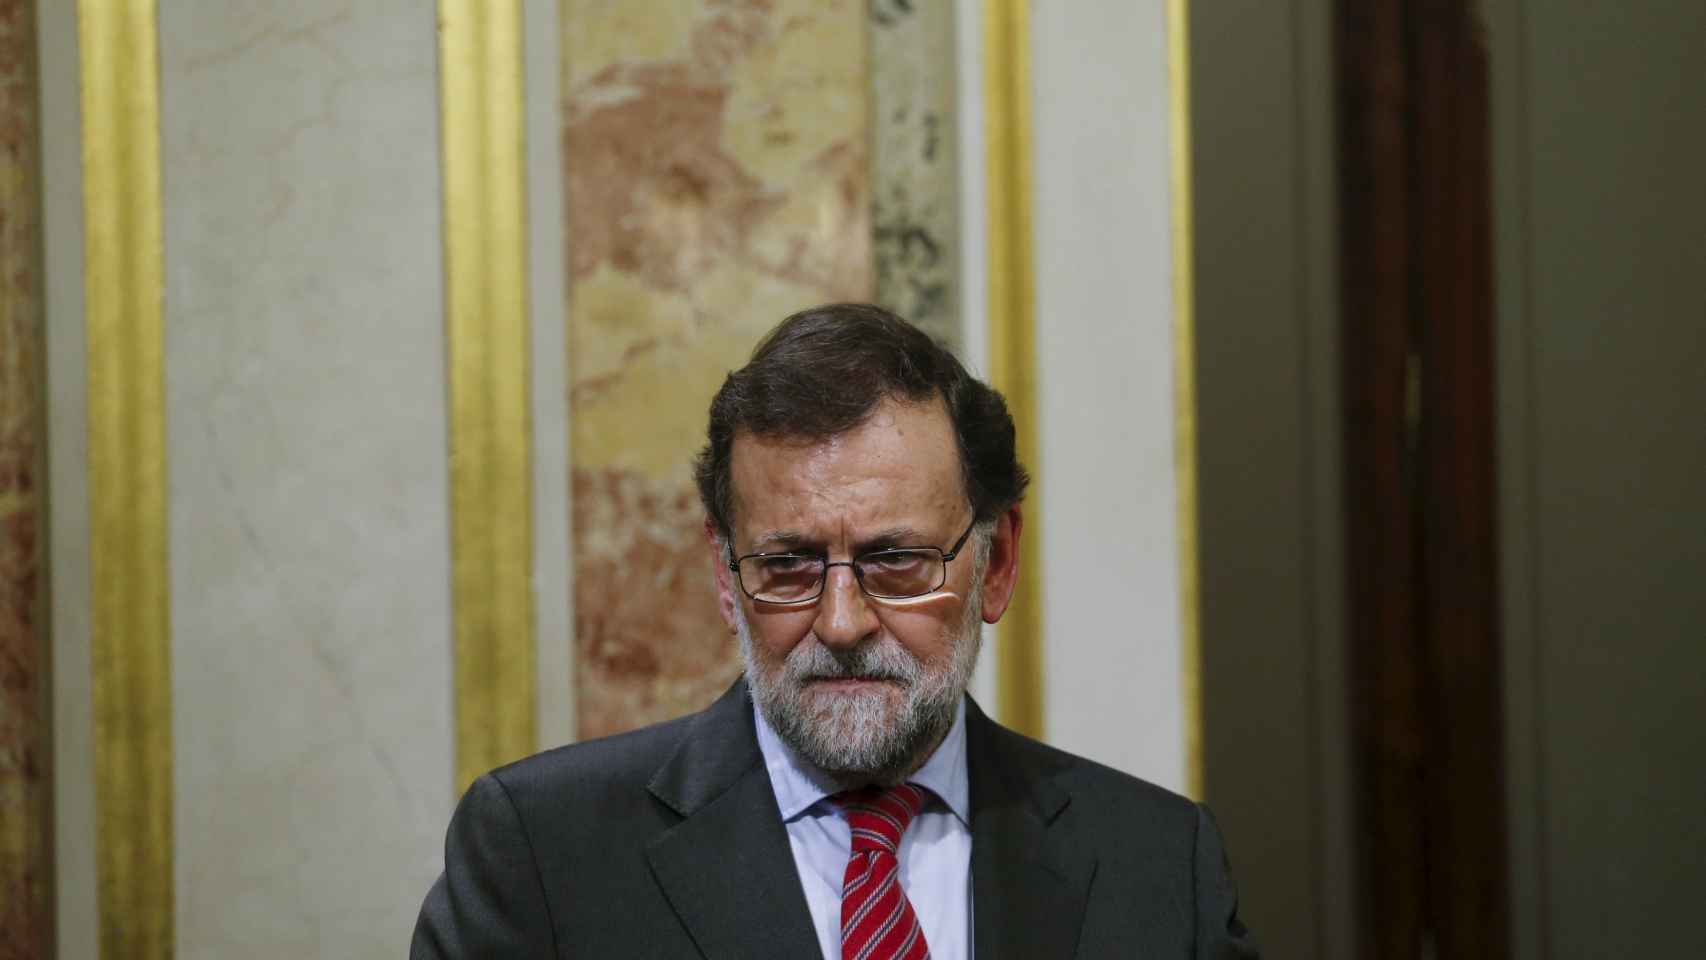 El presidente de Gobierno Mariano Rajoy/Juan Medina/Reuters